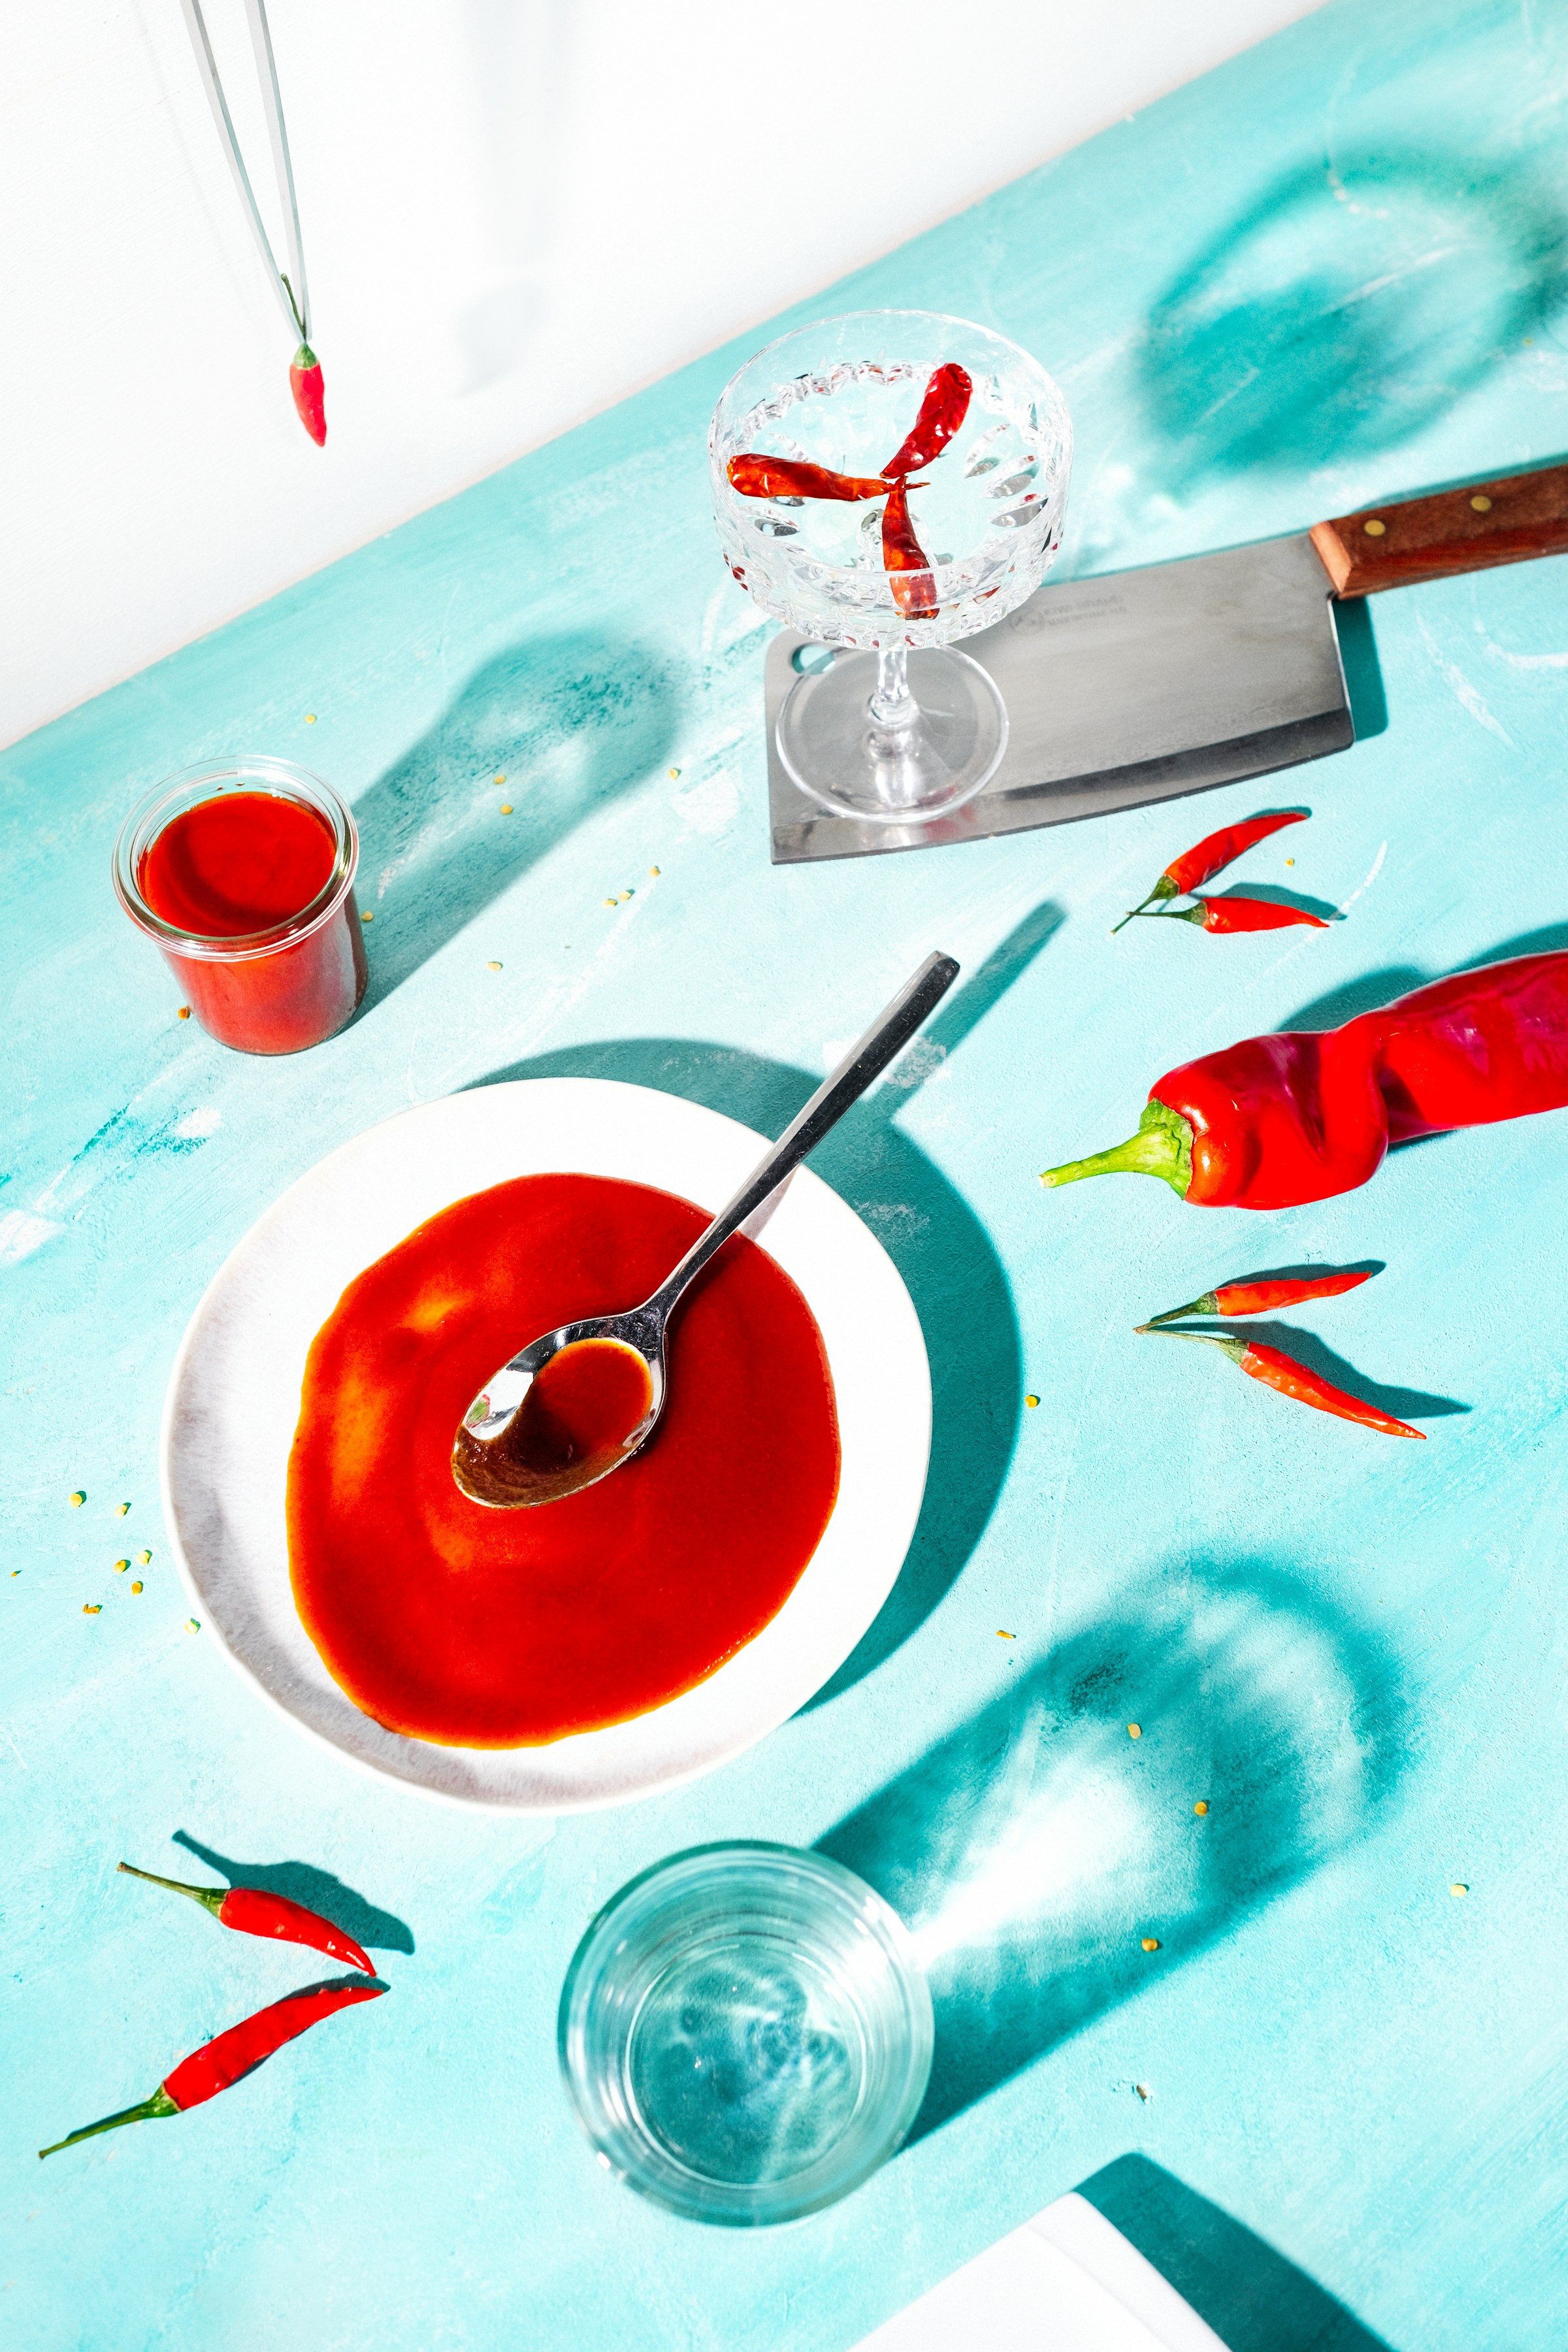 Hot sauce in a ceramic bowl | Source: Unsplash